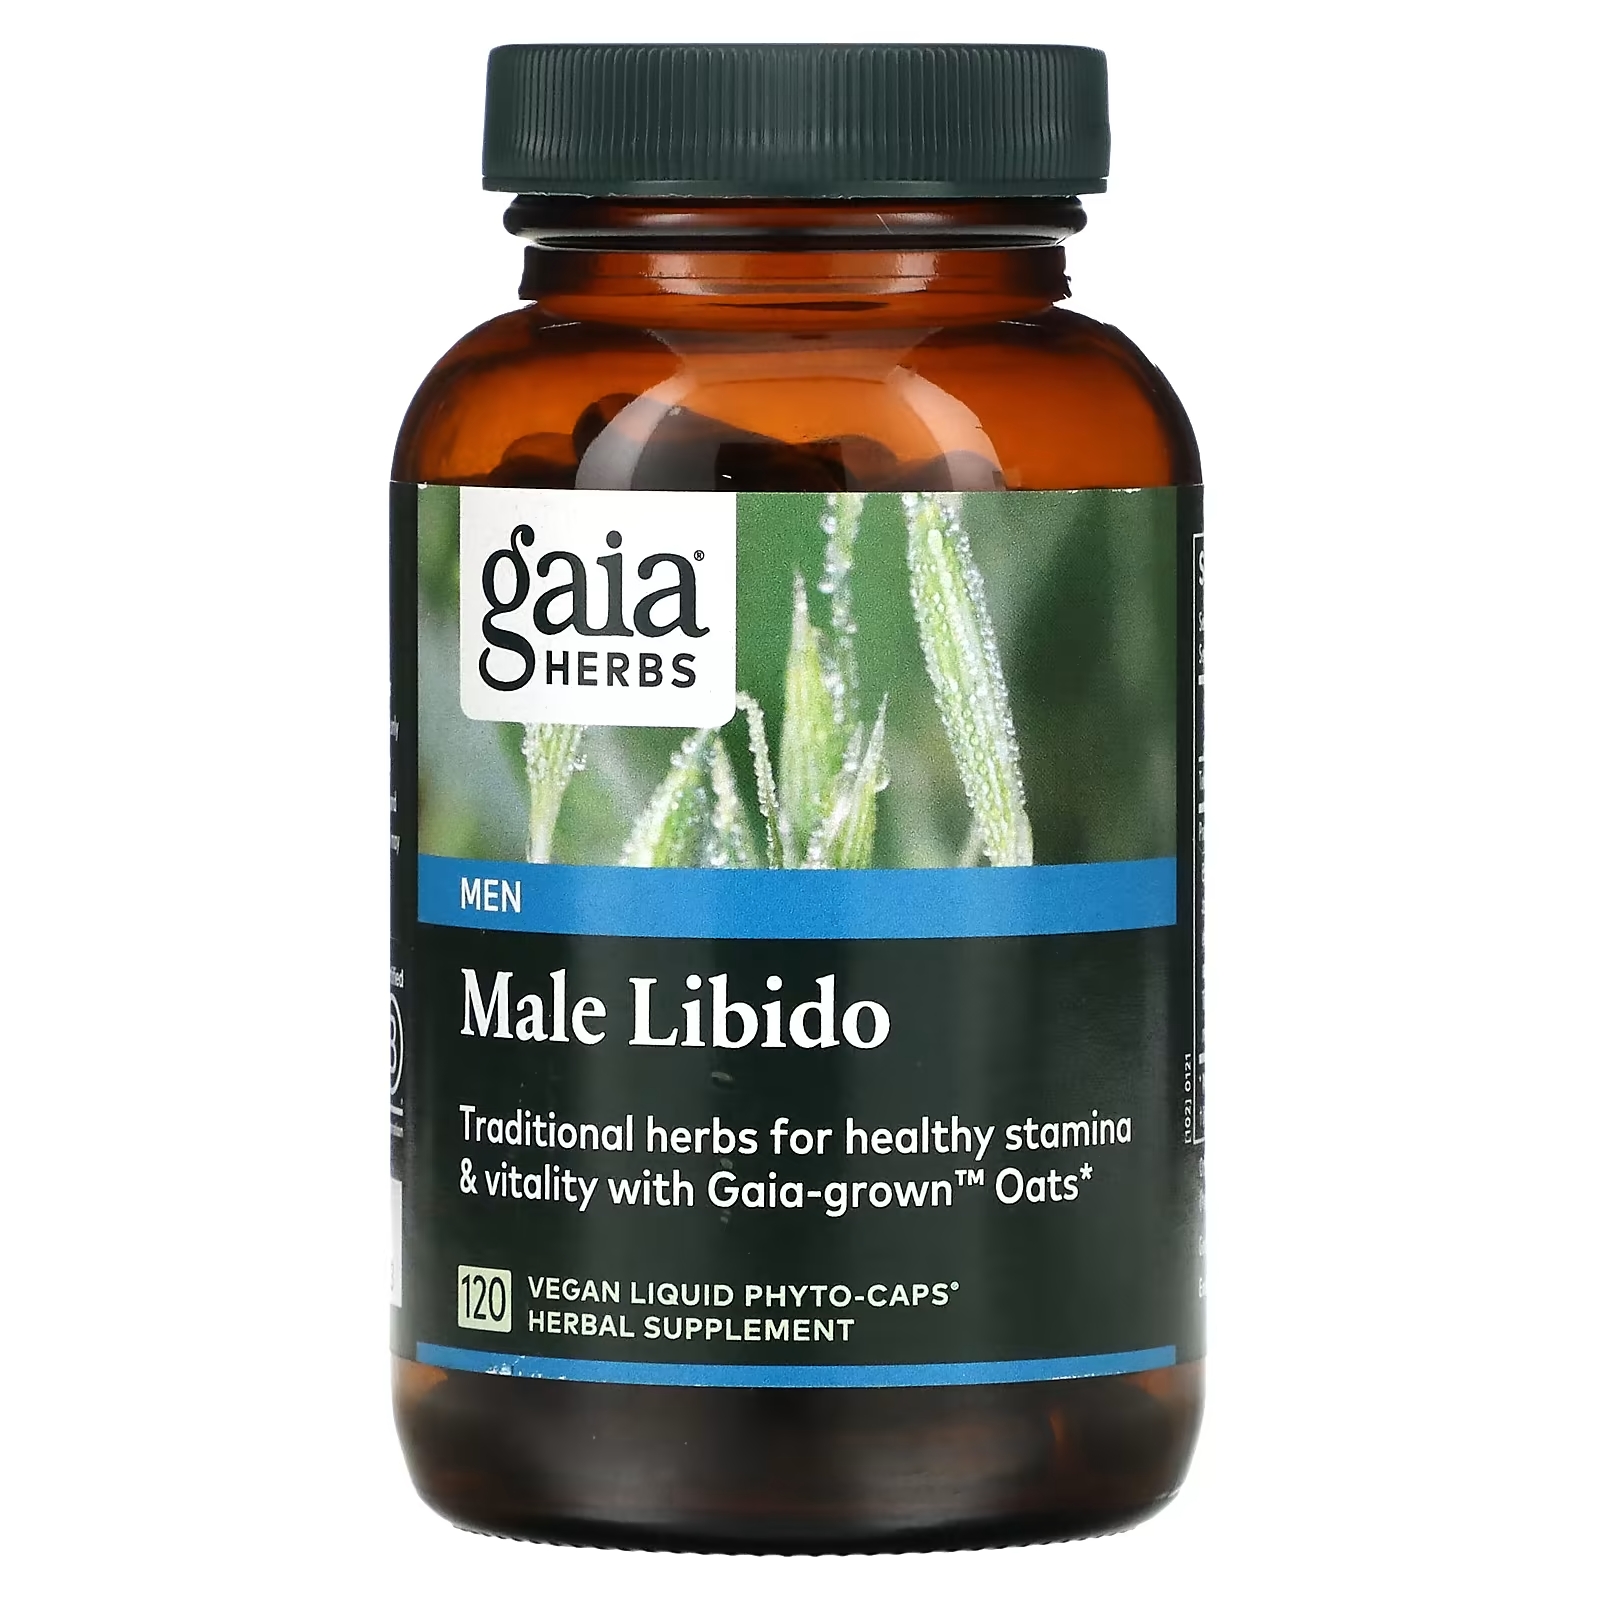 Gaia Herbs Для мужчин мужское либидо, 120 веганских капсул gaia herbs лист базилика священного 120 веганских капсул